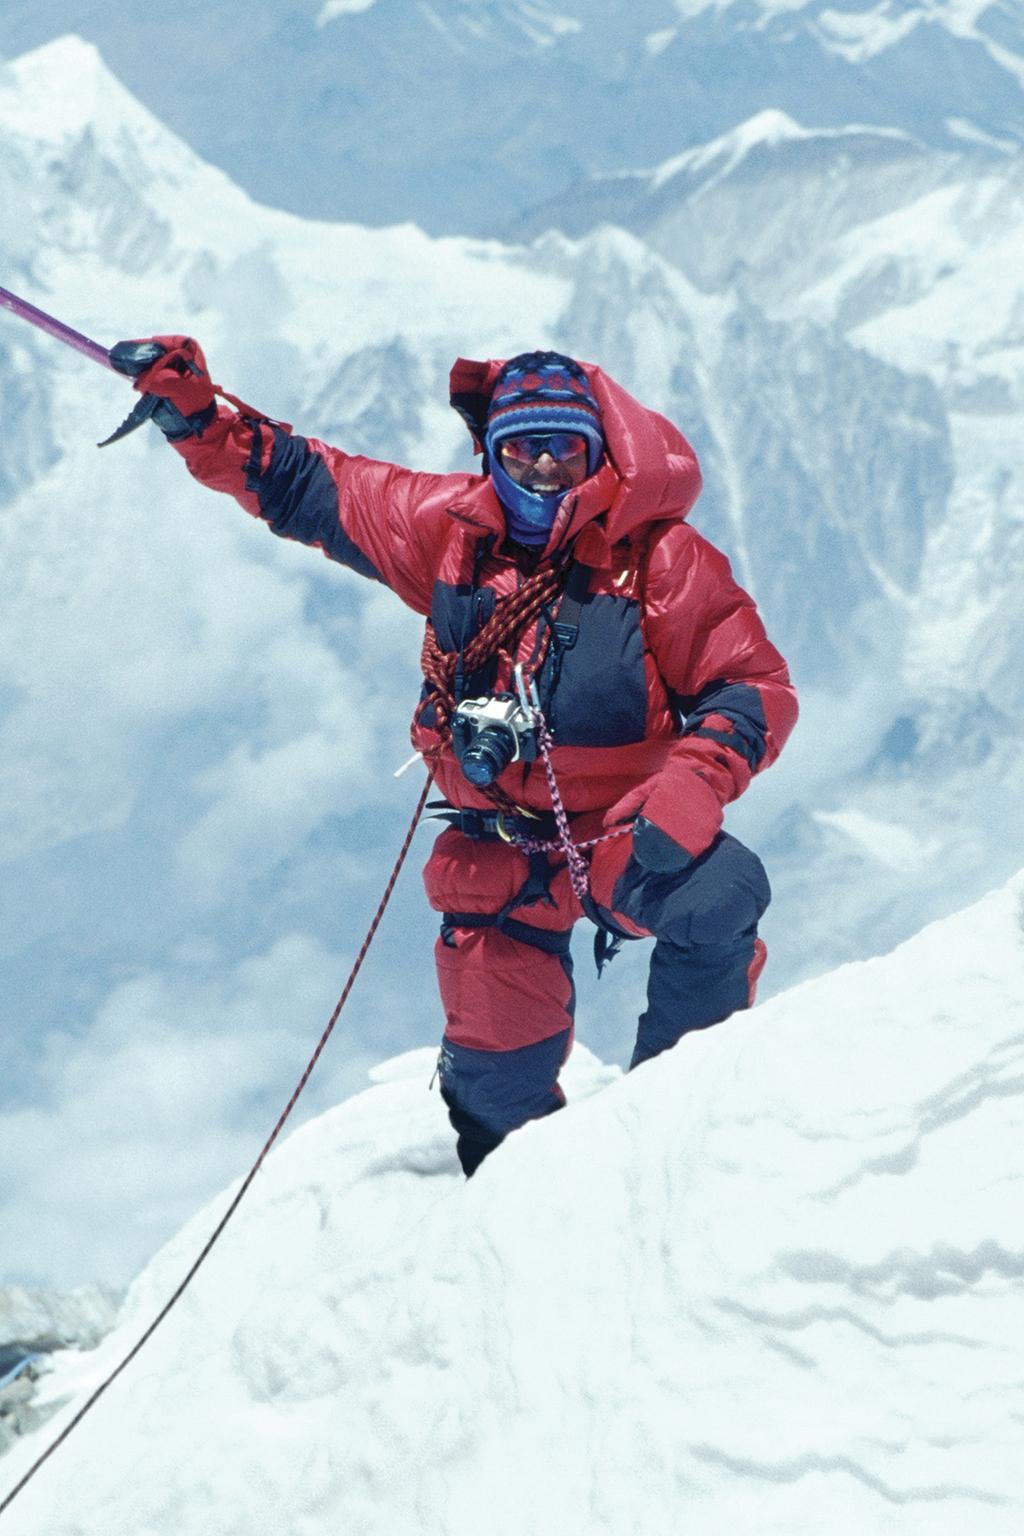 Ed Viesturs 14 X 8000 Ed Viesturs ABD'nin önde gelen yüksek irtifa dağcısıdır ve yedi Everest Dağı tırmanışı dahil olmak üzere dünyanın en zorlu zirvelerine birçok defa tırmanmıştır.